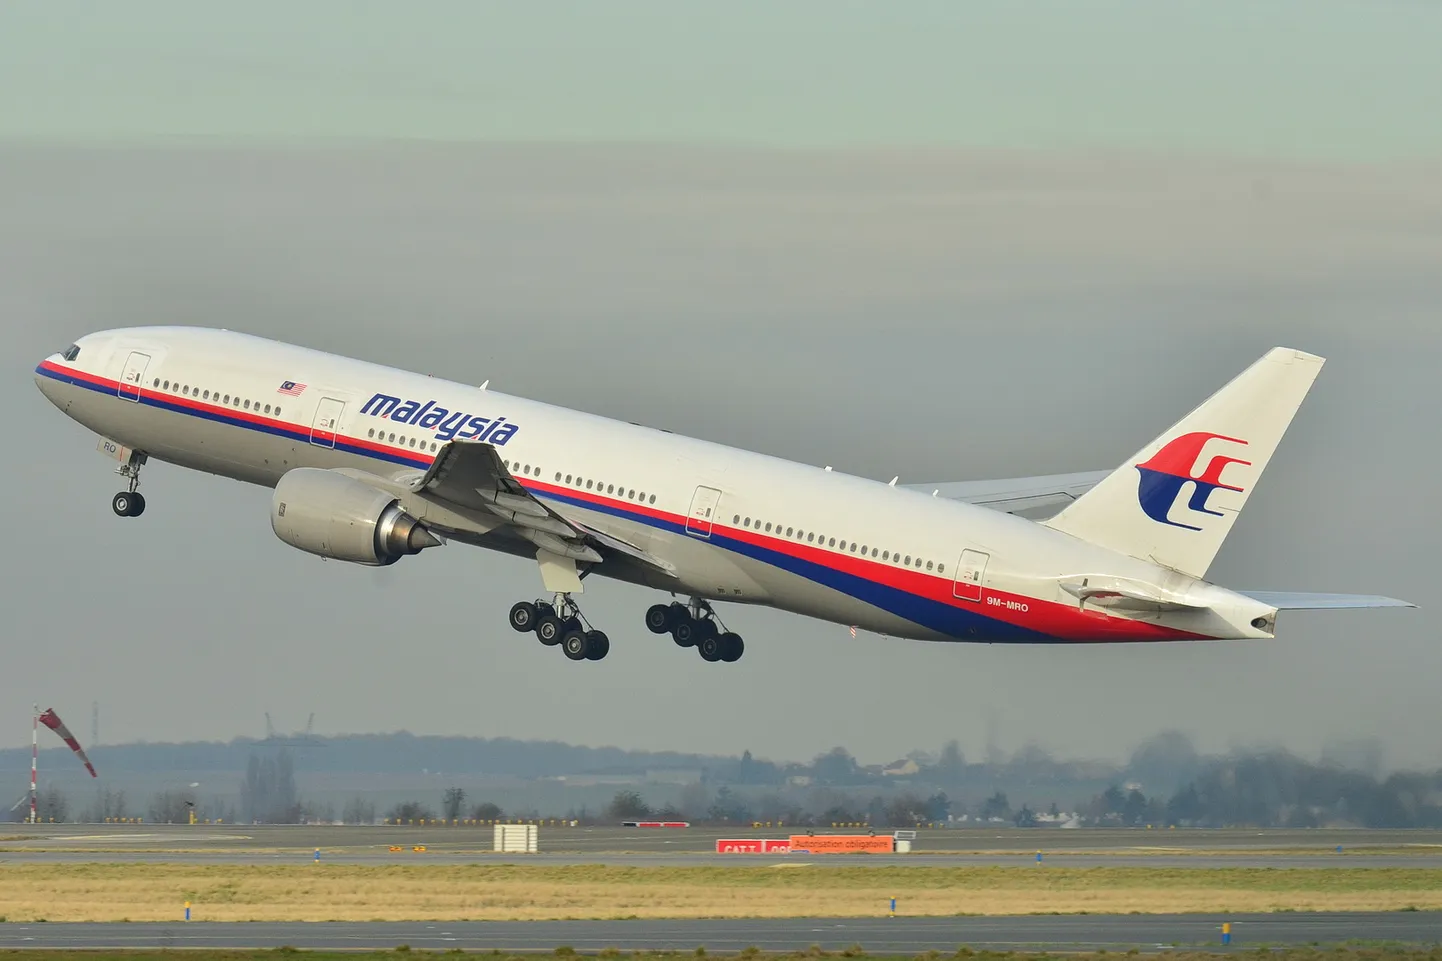 Malaysia Airlinesi lennuk Boeing 777 tõusmas 26. detsembril 2011 õhuku Roissy-Charles de Gaulle'i lennuväljalt. Sama lennuk kadus 8. märtsil 2014